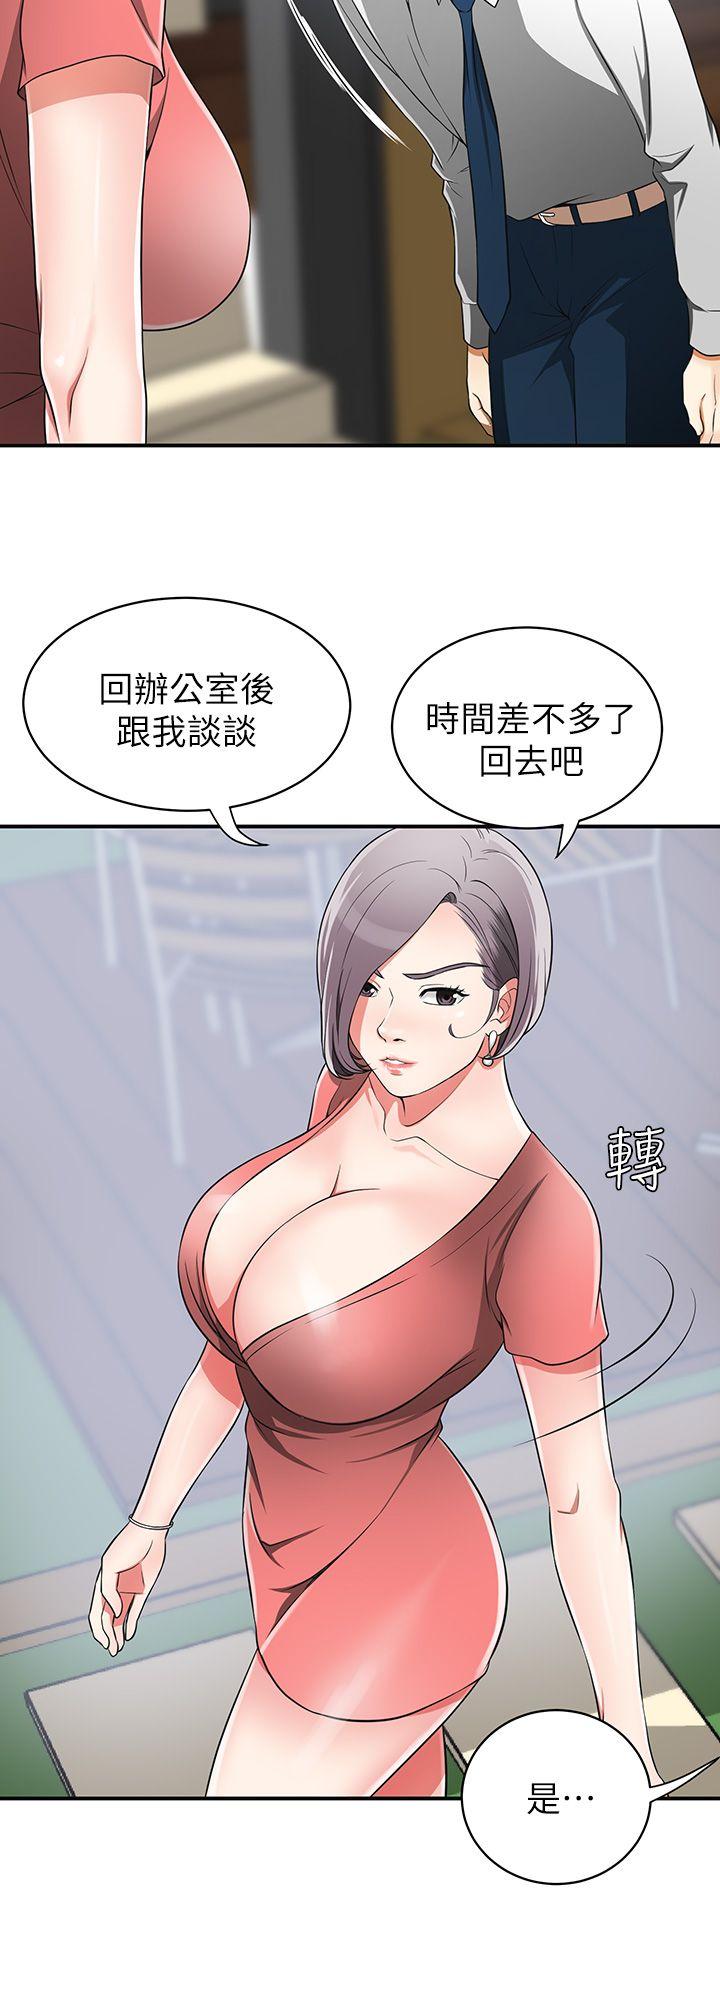 韩国污漫画 我要搶走她 第7话-碰一下又不会少一块肉 8